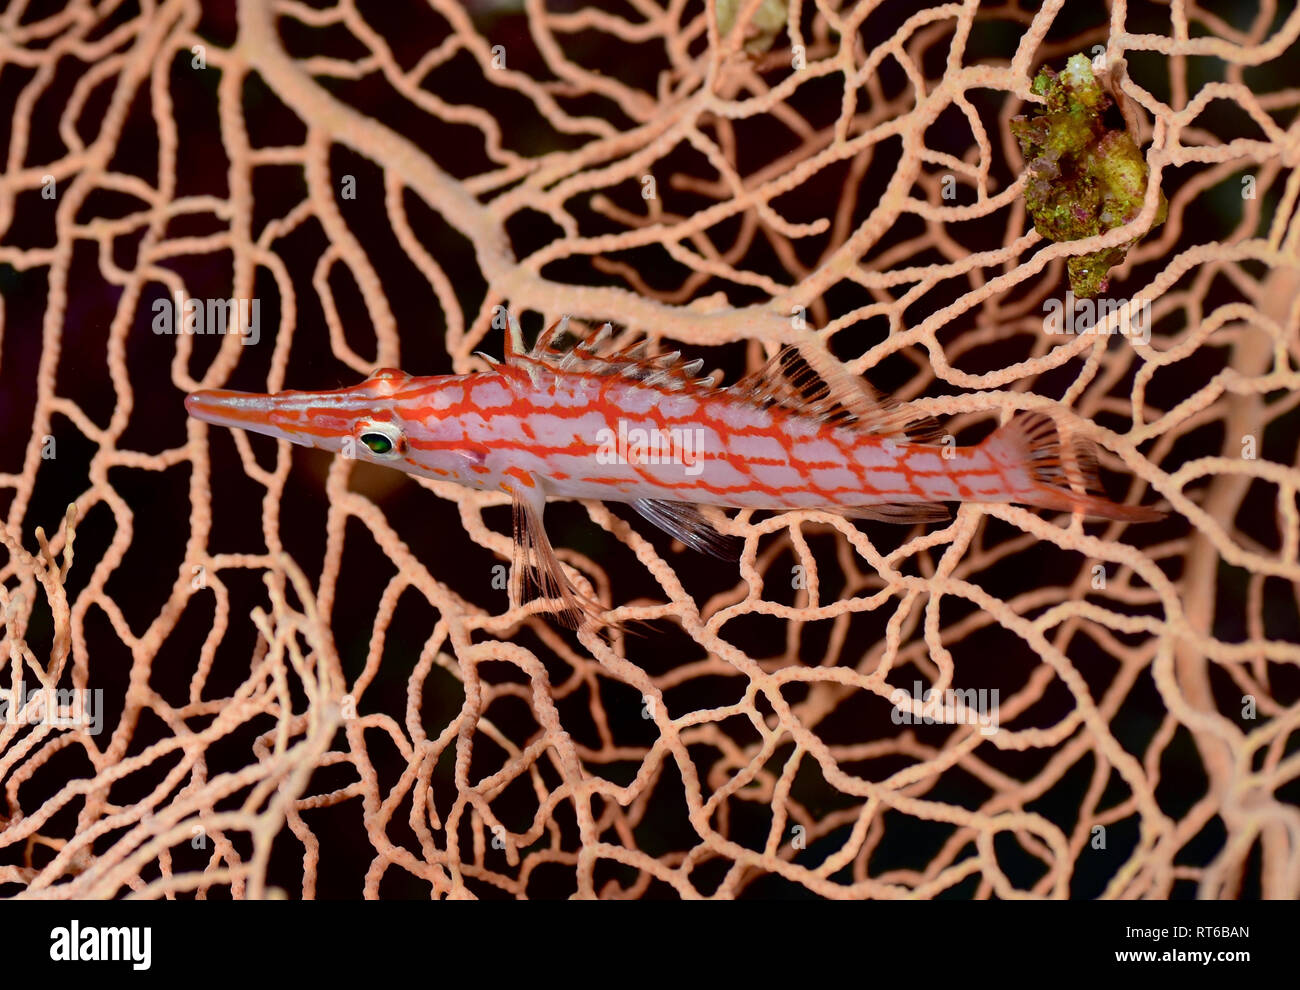 Longnose fischfreundschaften, Rotes Meer, Ägypten. Stockfoto